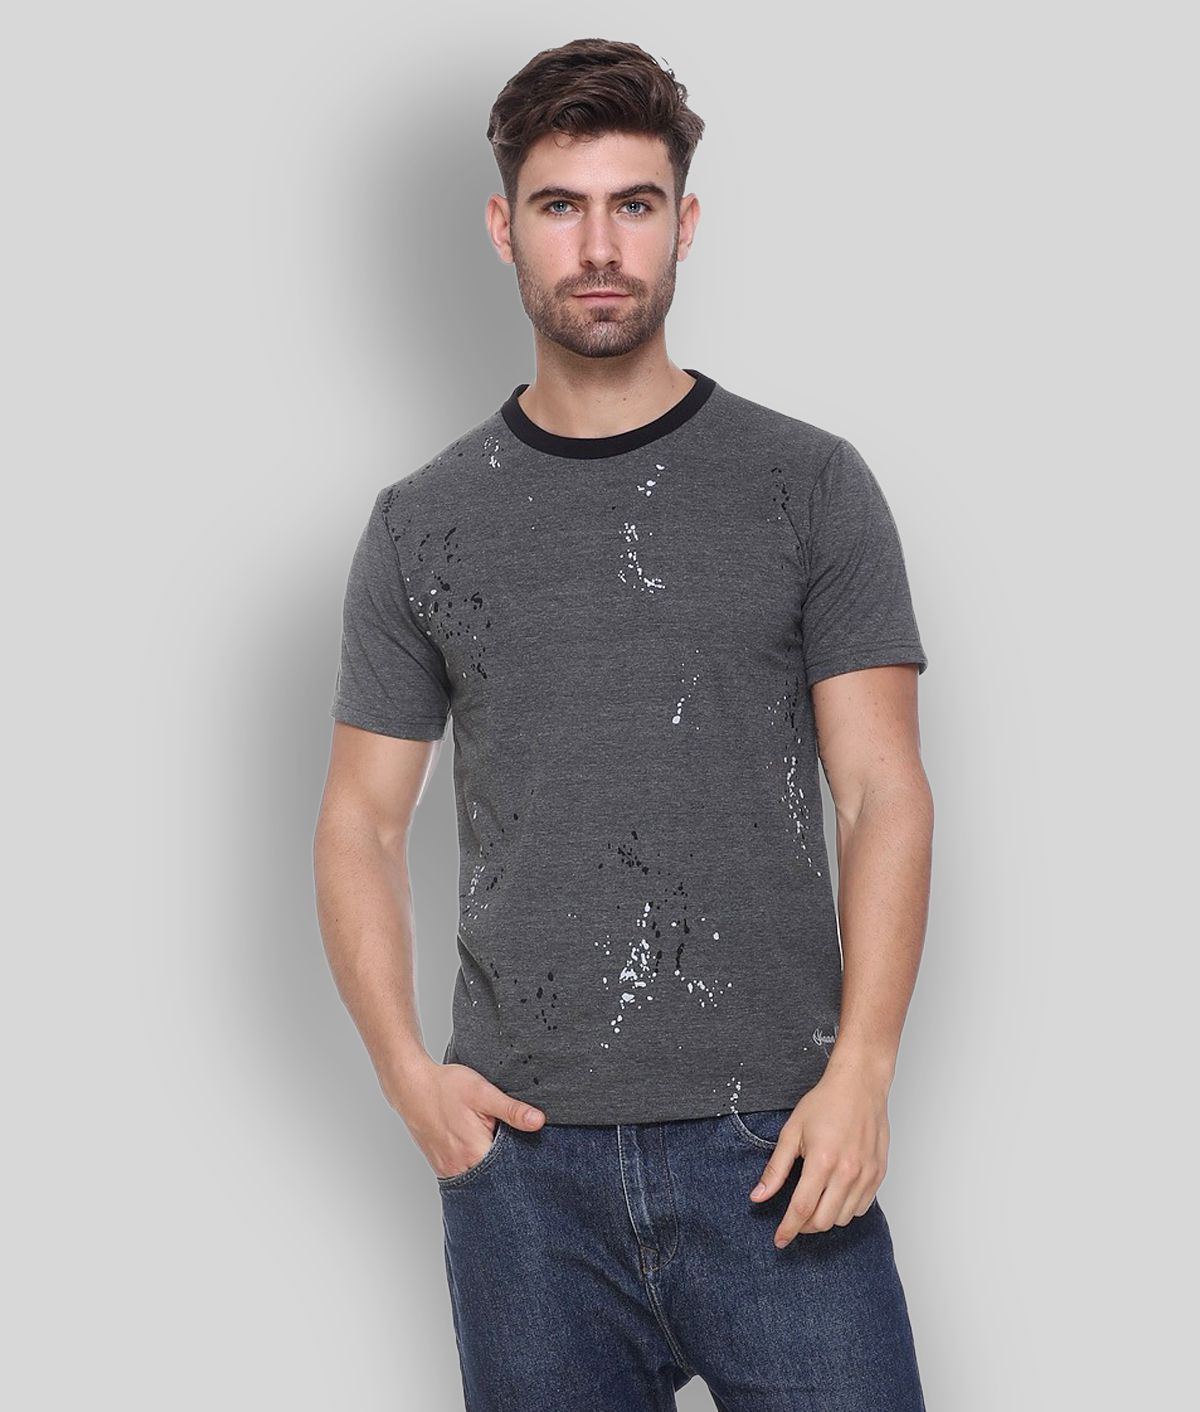     			OBAAN - Grey Cotton Blend Regular Fit Men's T-Shirt ( Pack of 1 )